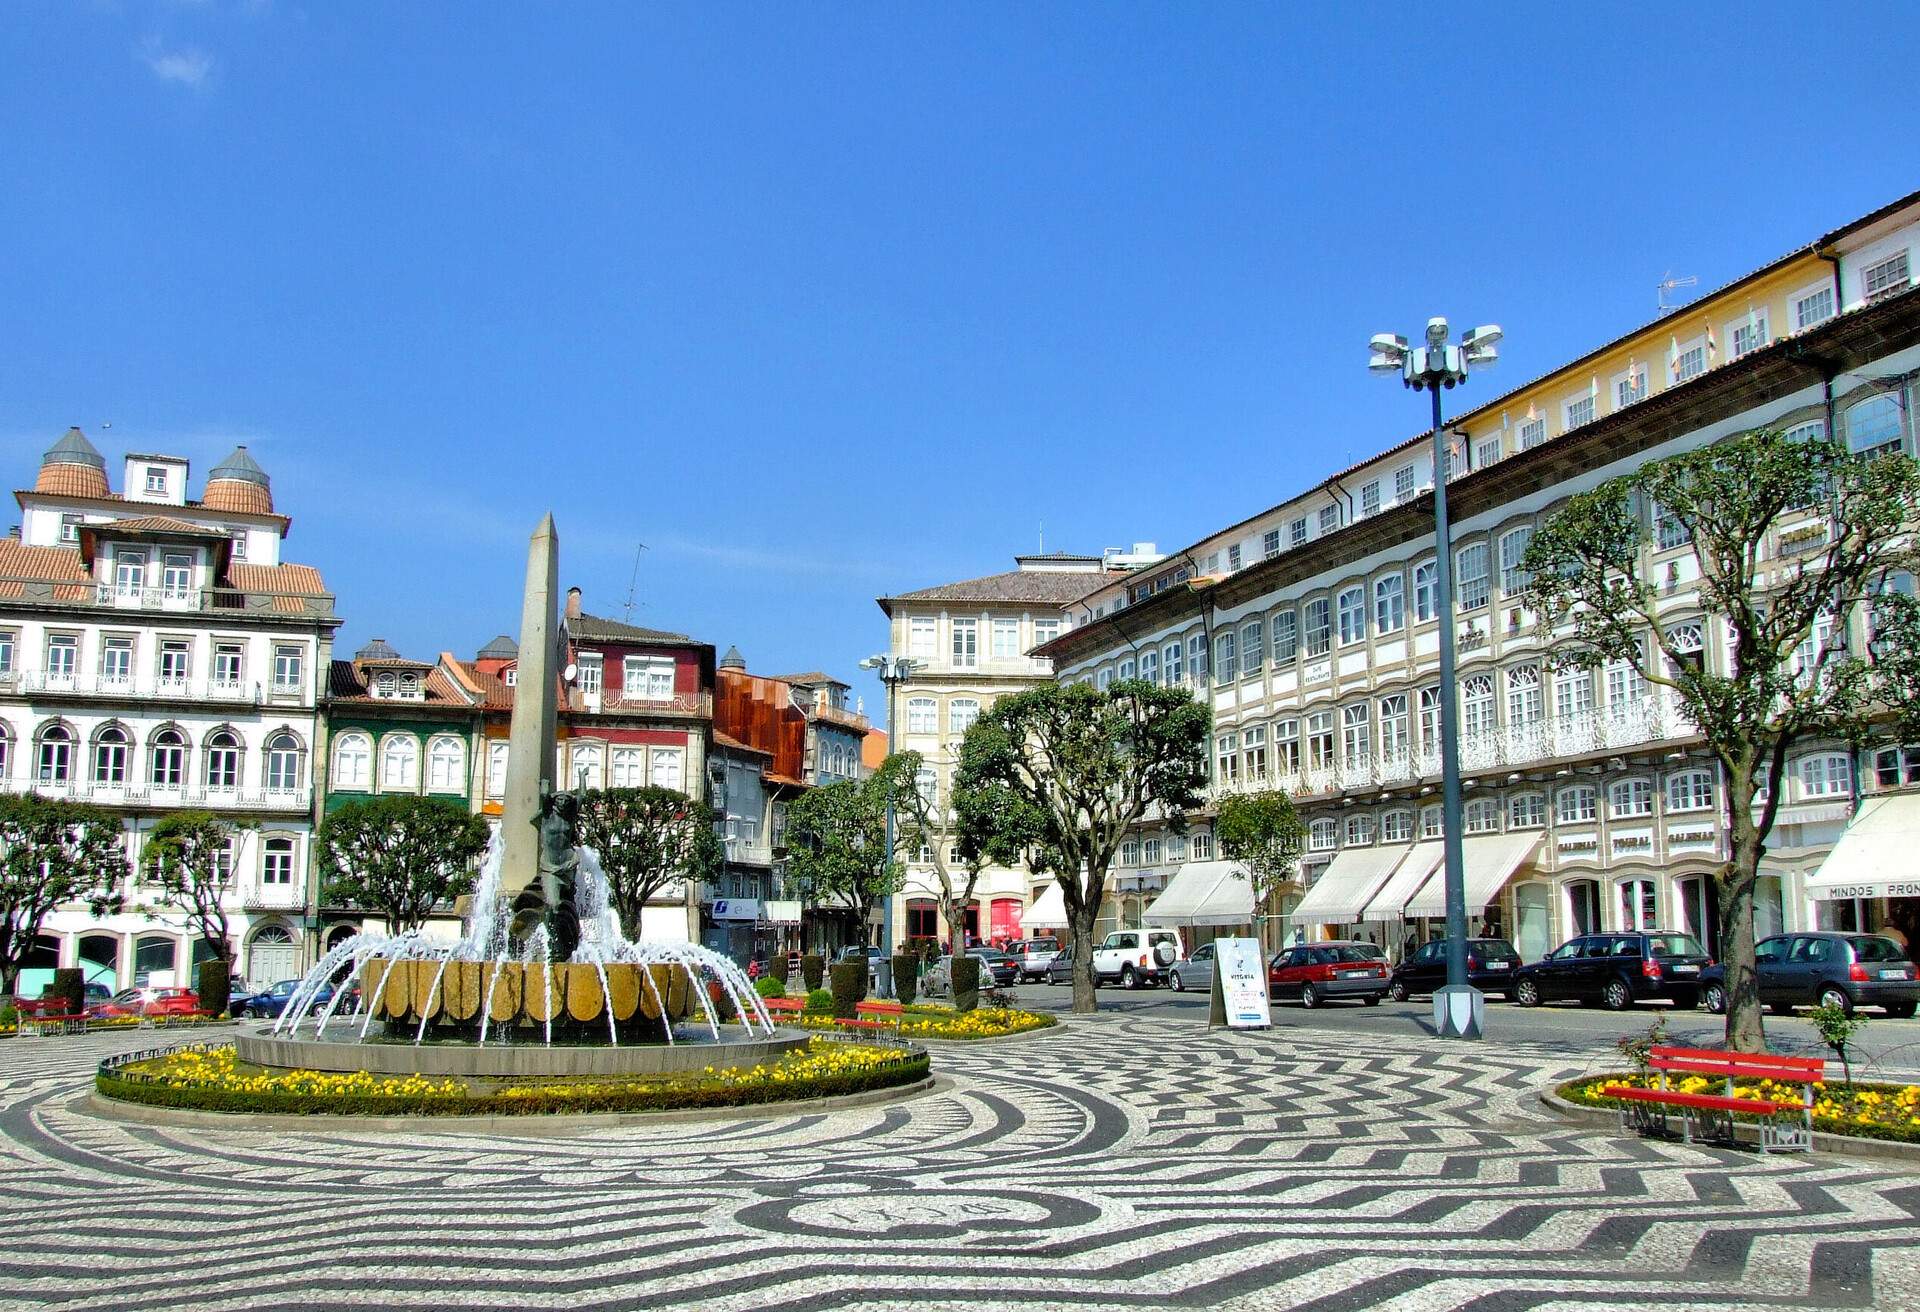 Toural square in Guimaraes, Portugal.